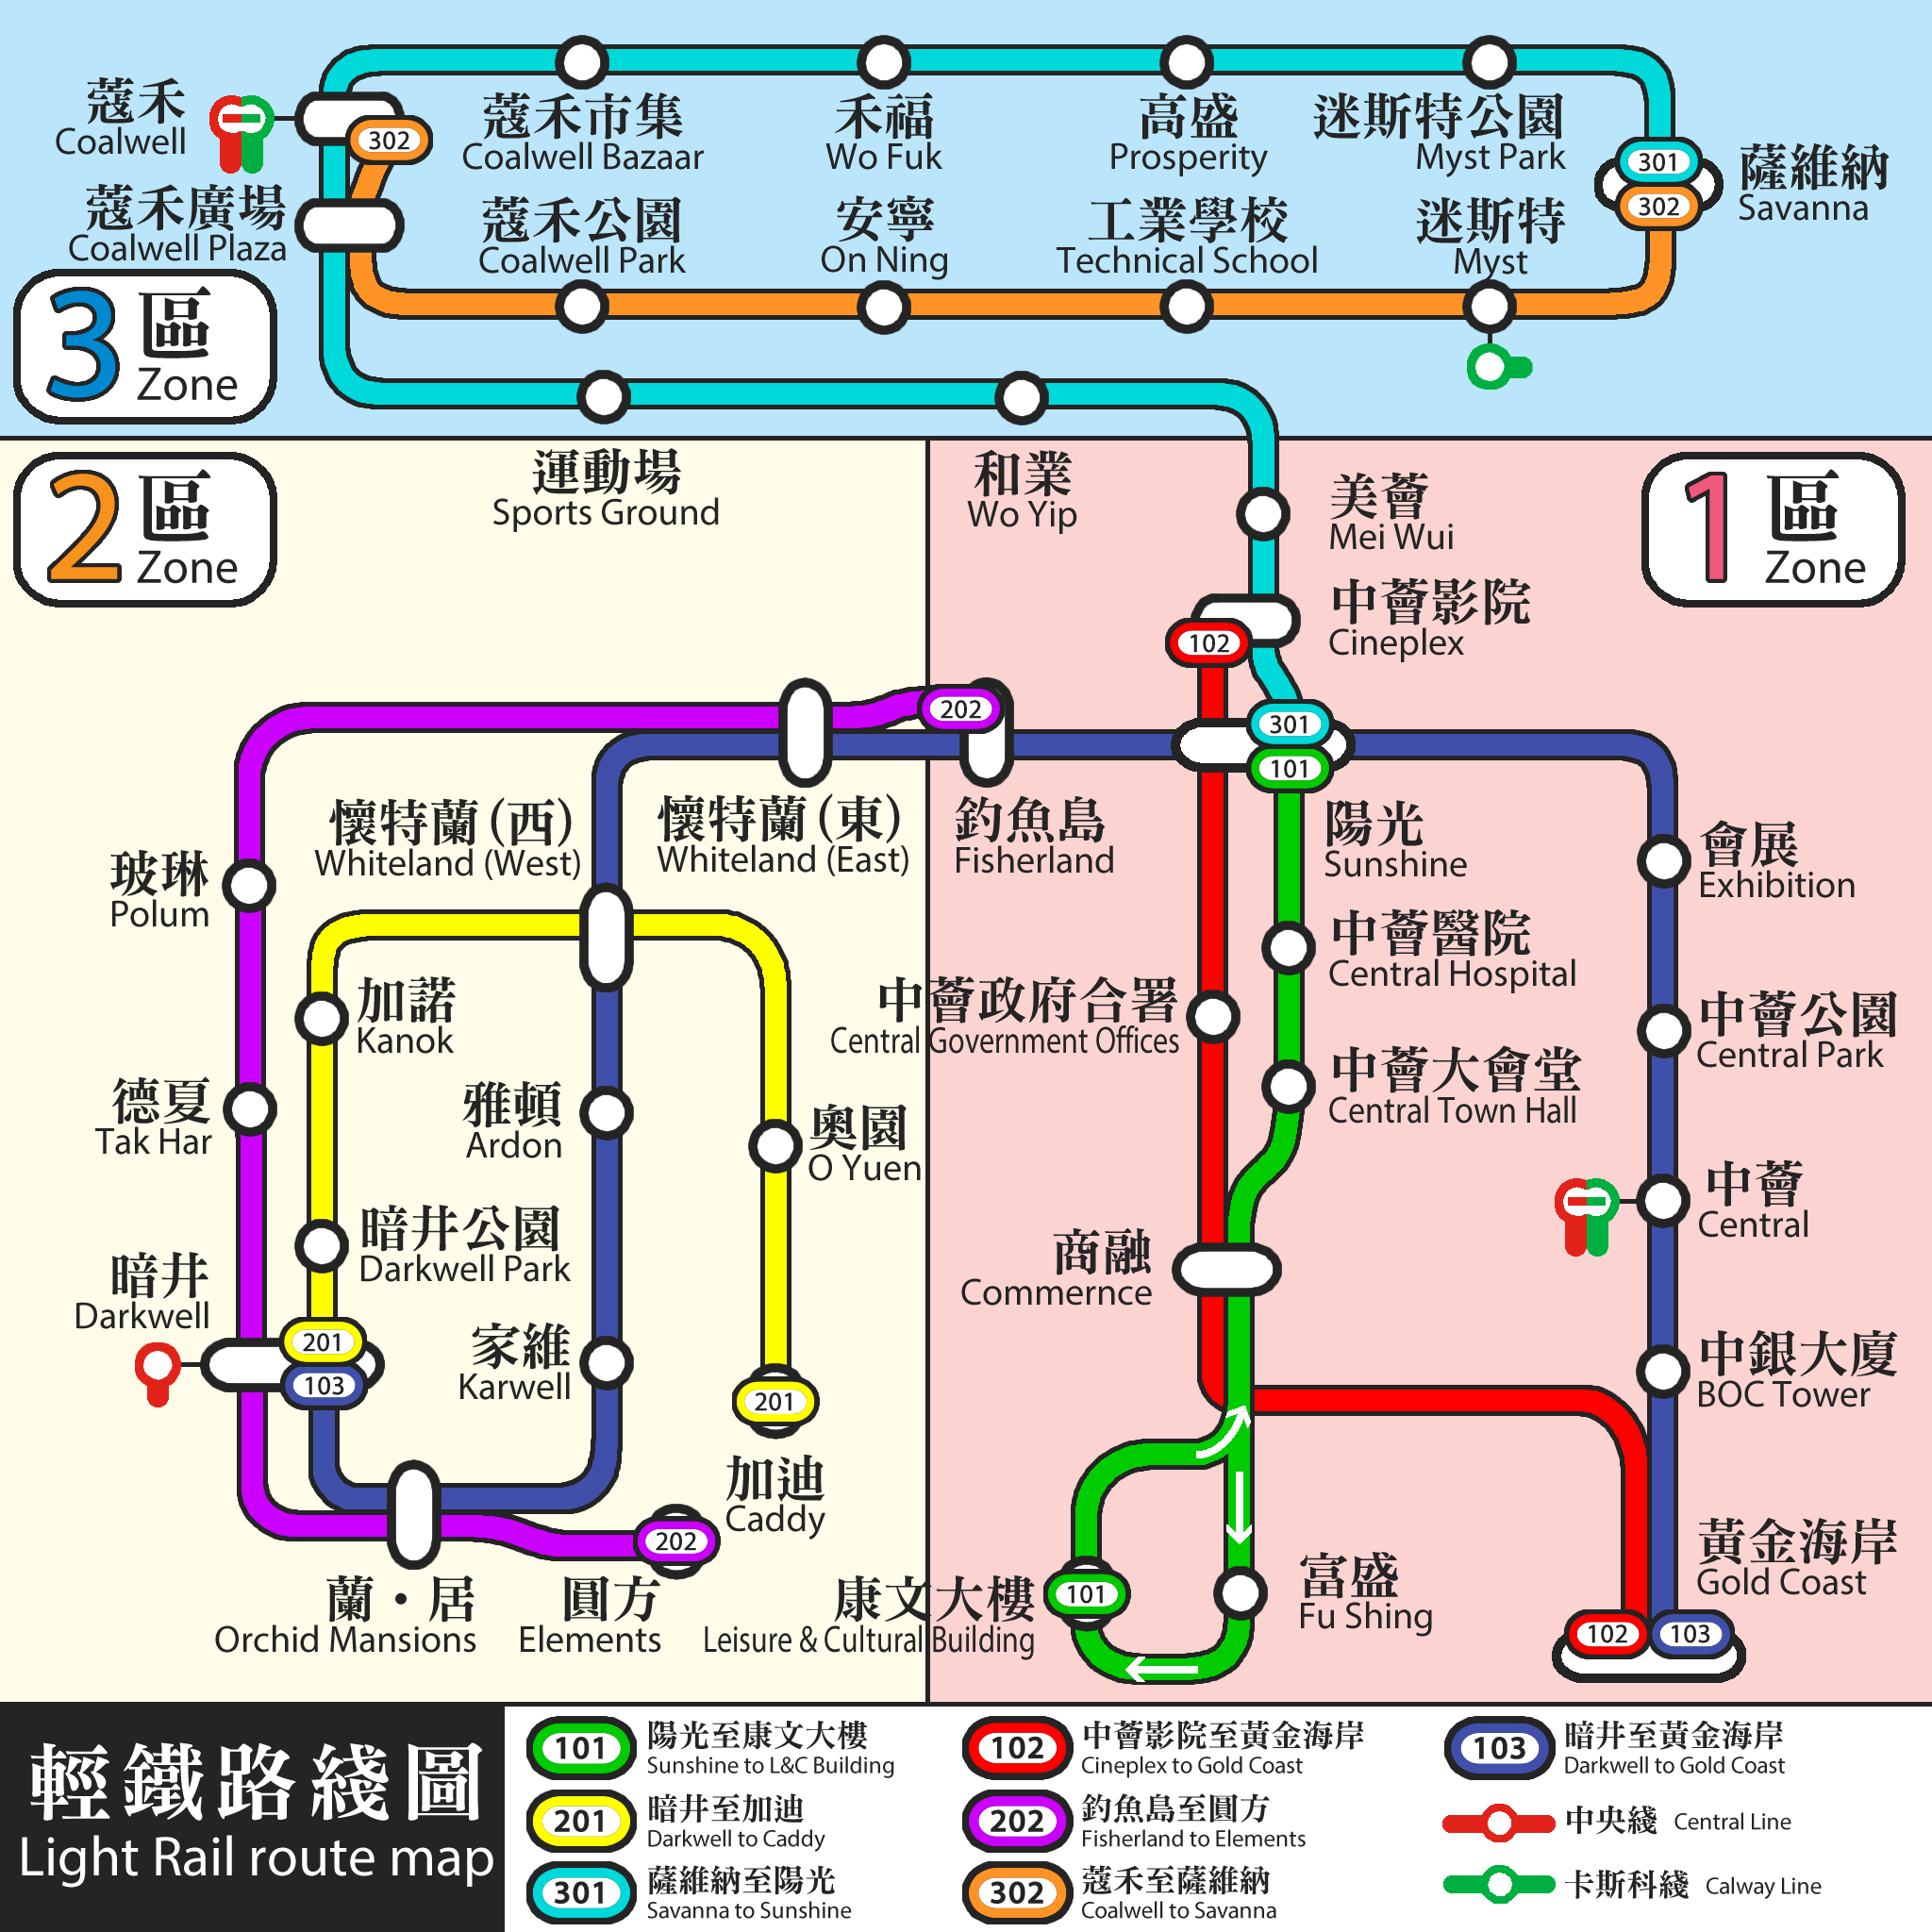 LR route map